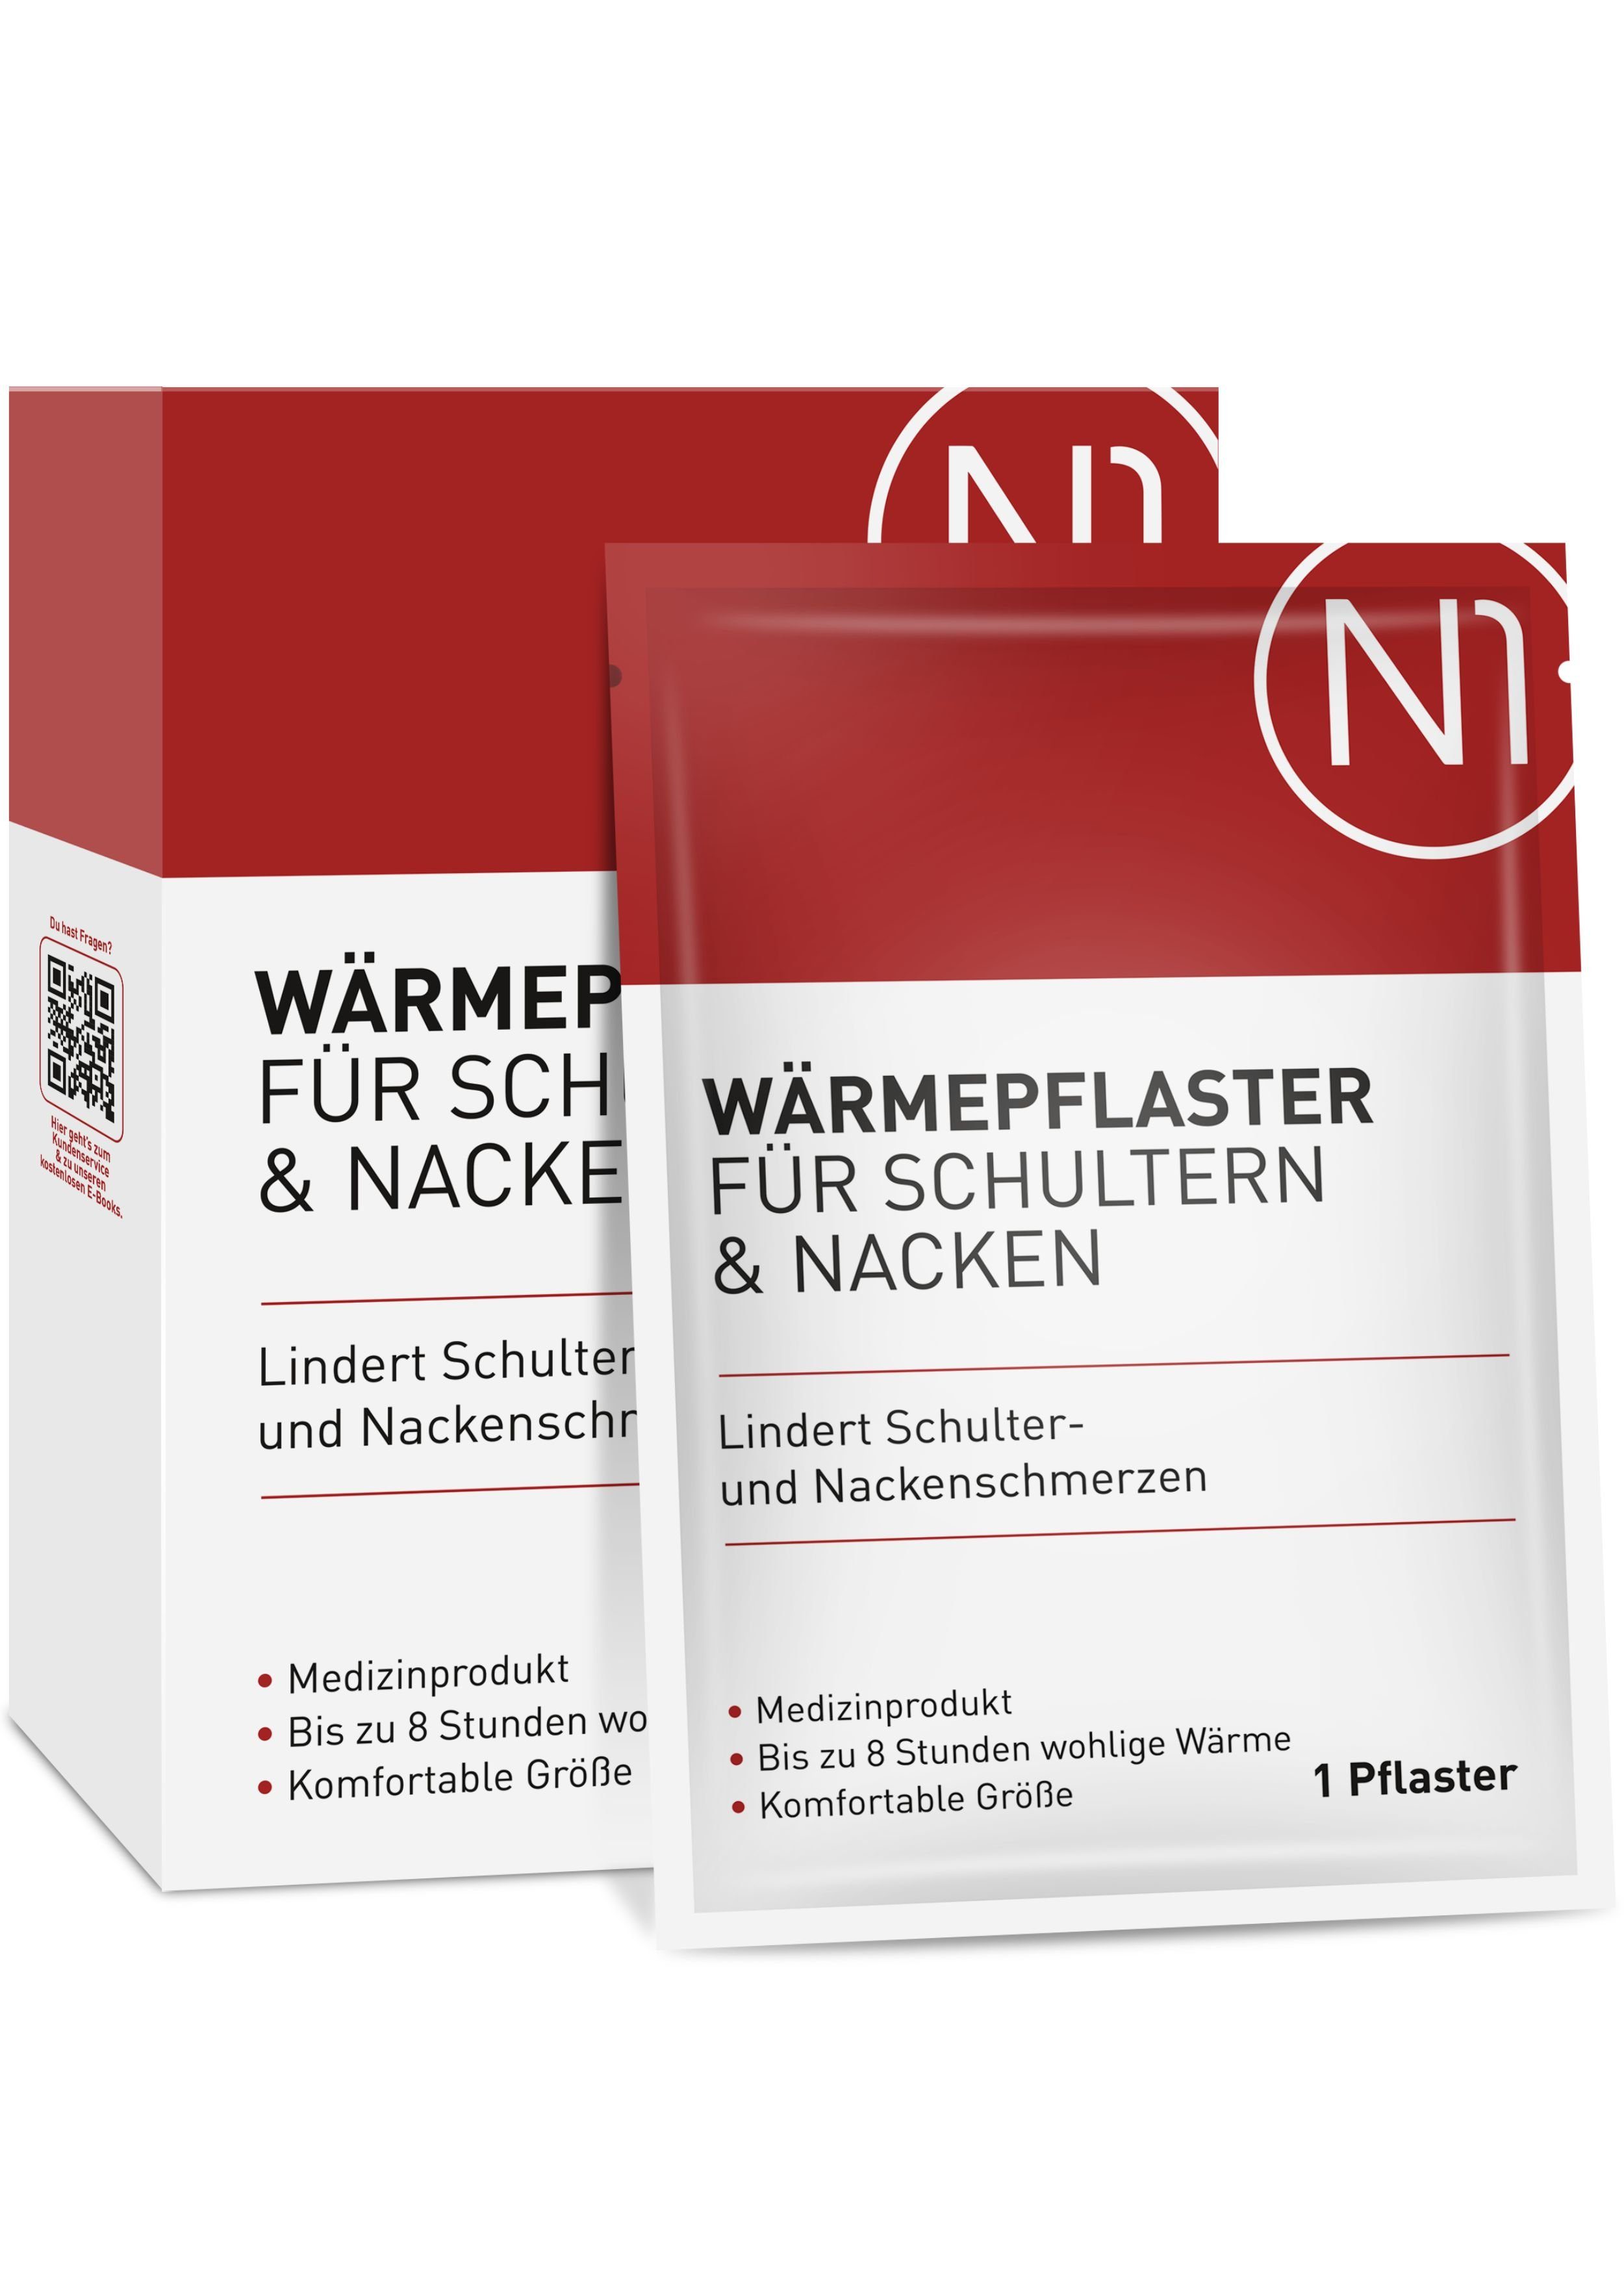 N1 Healthcare Wärmepflaster für Schulter & Nacken (8 St), 8 Stunden wohltuende Wärme